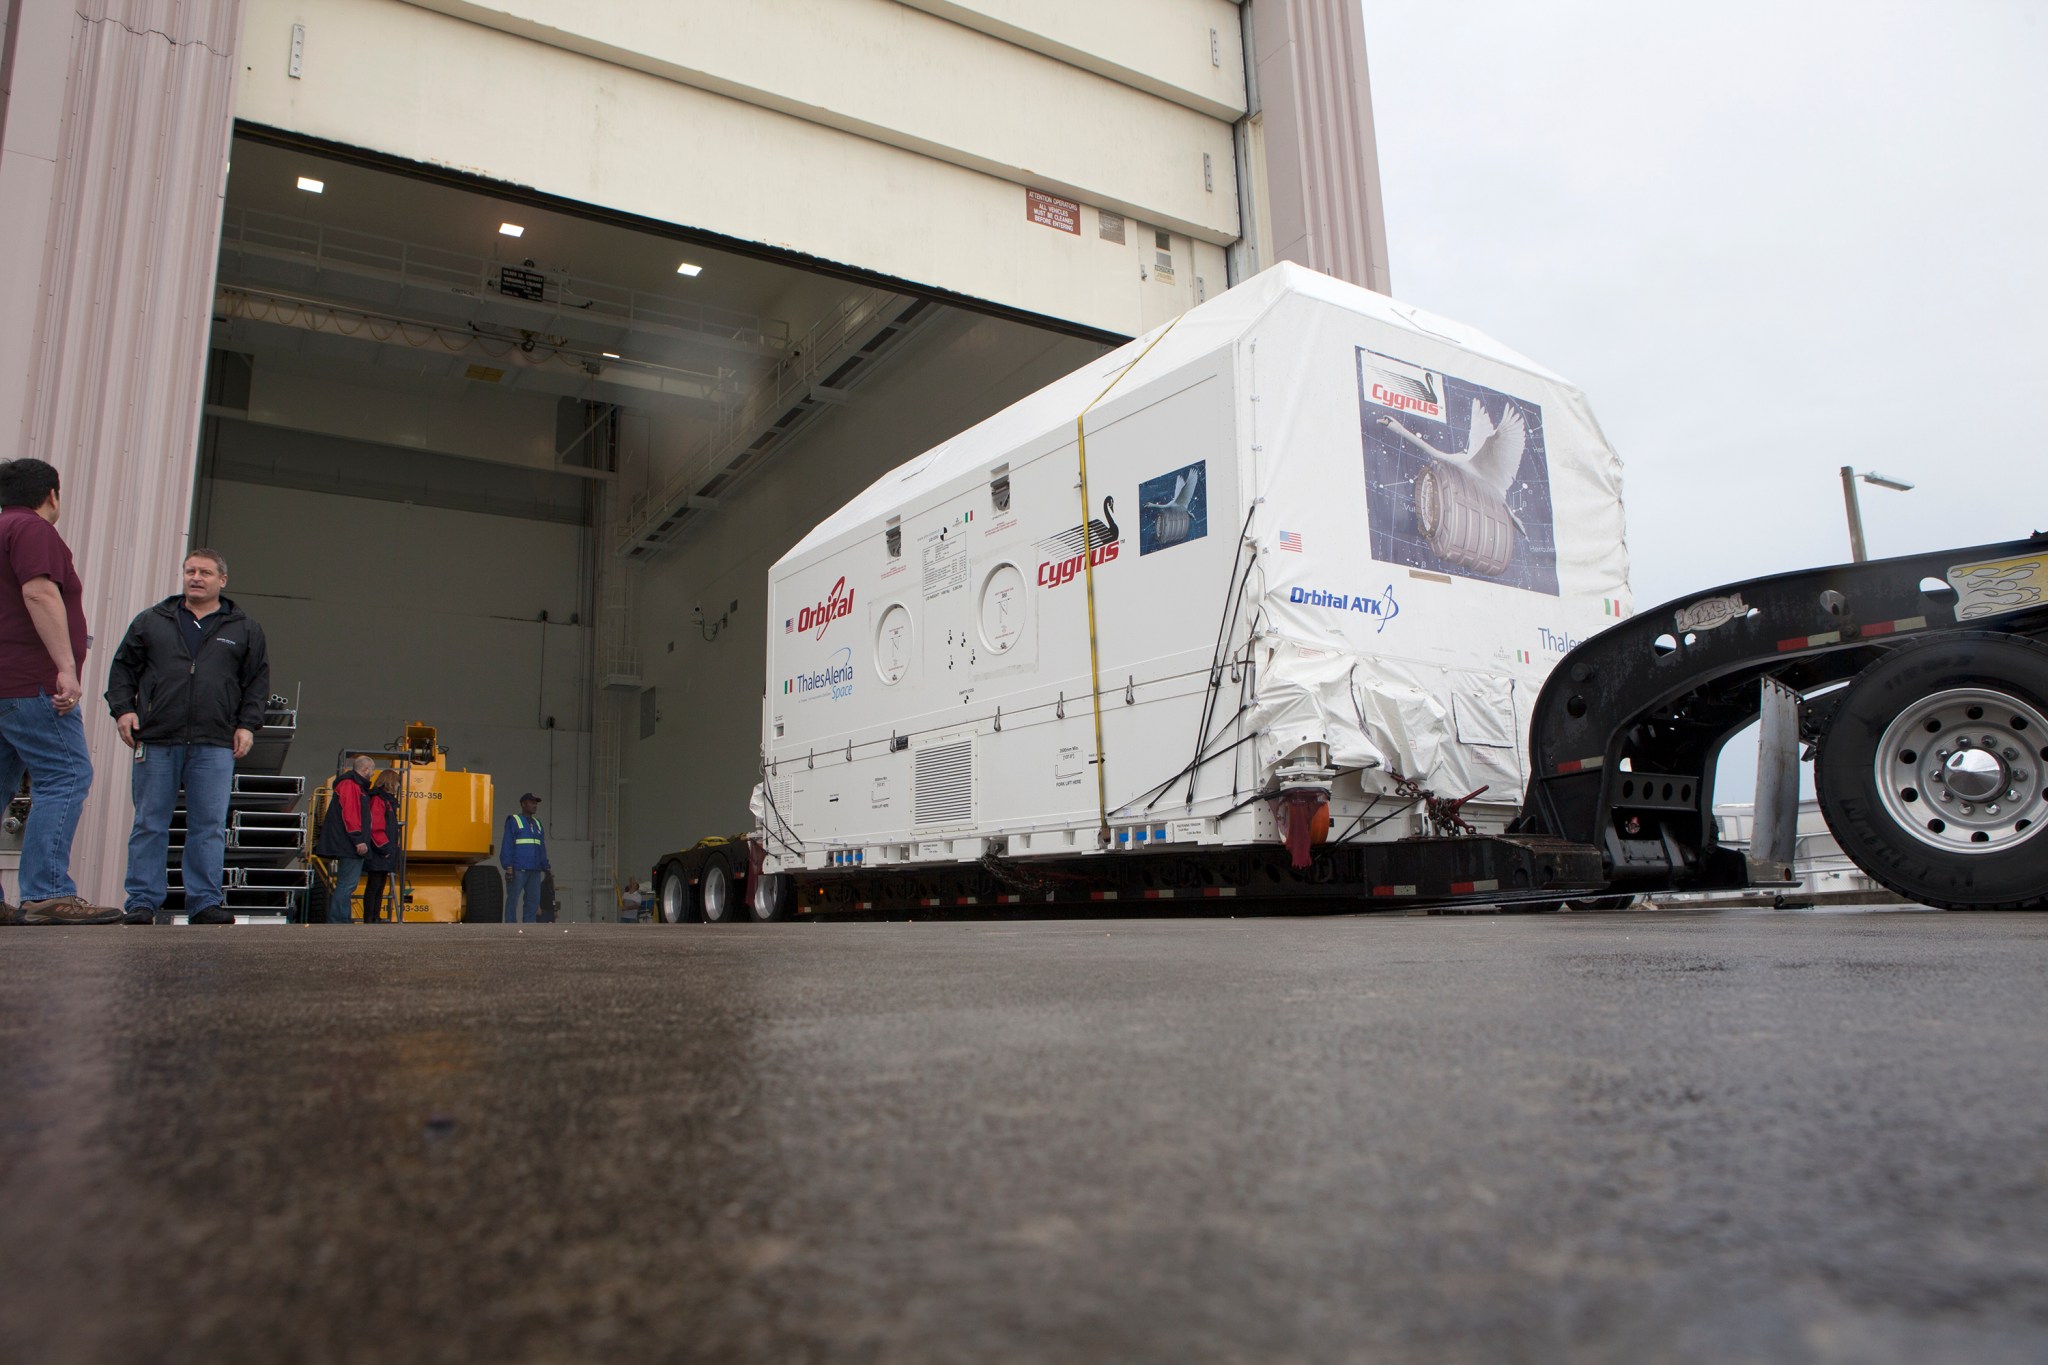 Orbital ATK Cygnus pressurized cargo module